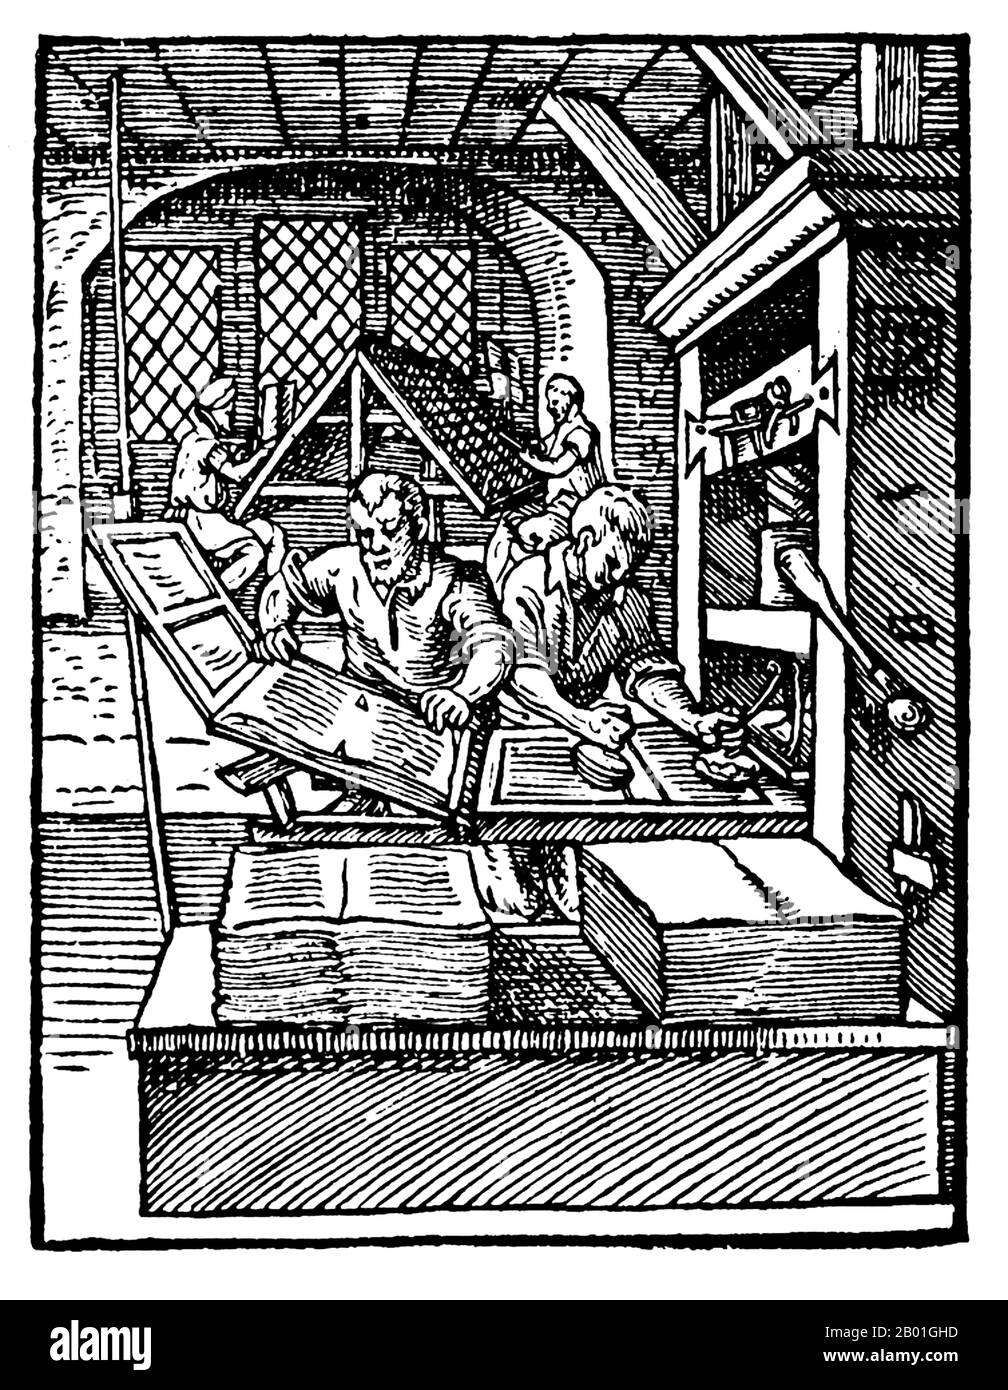 Deutschland: Eine mechanische Druckmaschine des Typs von Johannes Gutenberg. Holzschnitt-Gravur von Jost Amman (1539. Bis 17. März 1591), c. 1568. Links im Vordergrund entfernt ein Drucker eine gedruckte Seite von der Druckmaschine. Der Drucker auf der rechten Seite färbt die Platte ein. Im Hintergrund verwenden Kompositoren den Guss-Typ. Druckmaschinen dieser Art können 240 Ausdrucke pro Stunde machen. Stockfoto